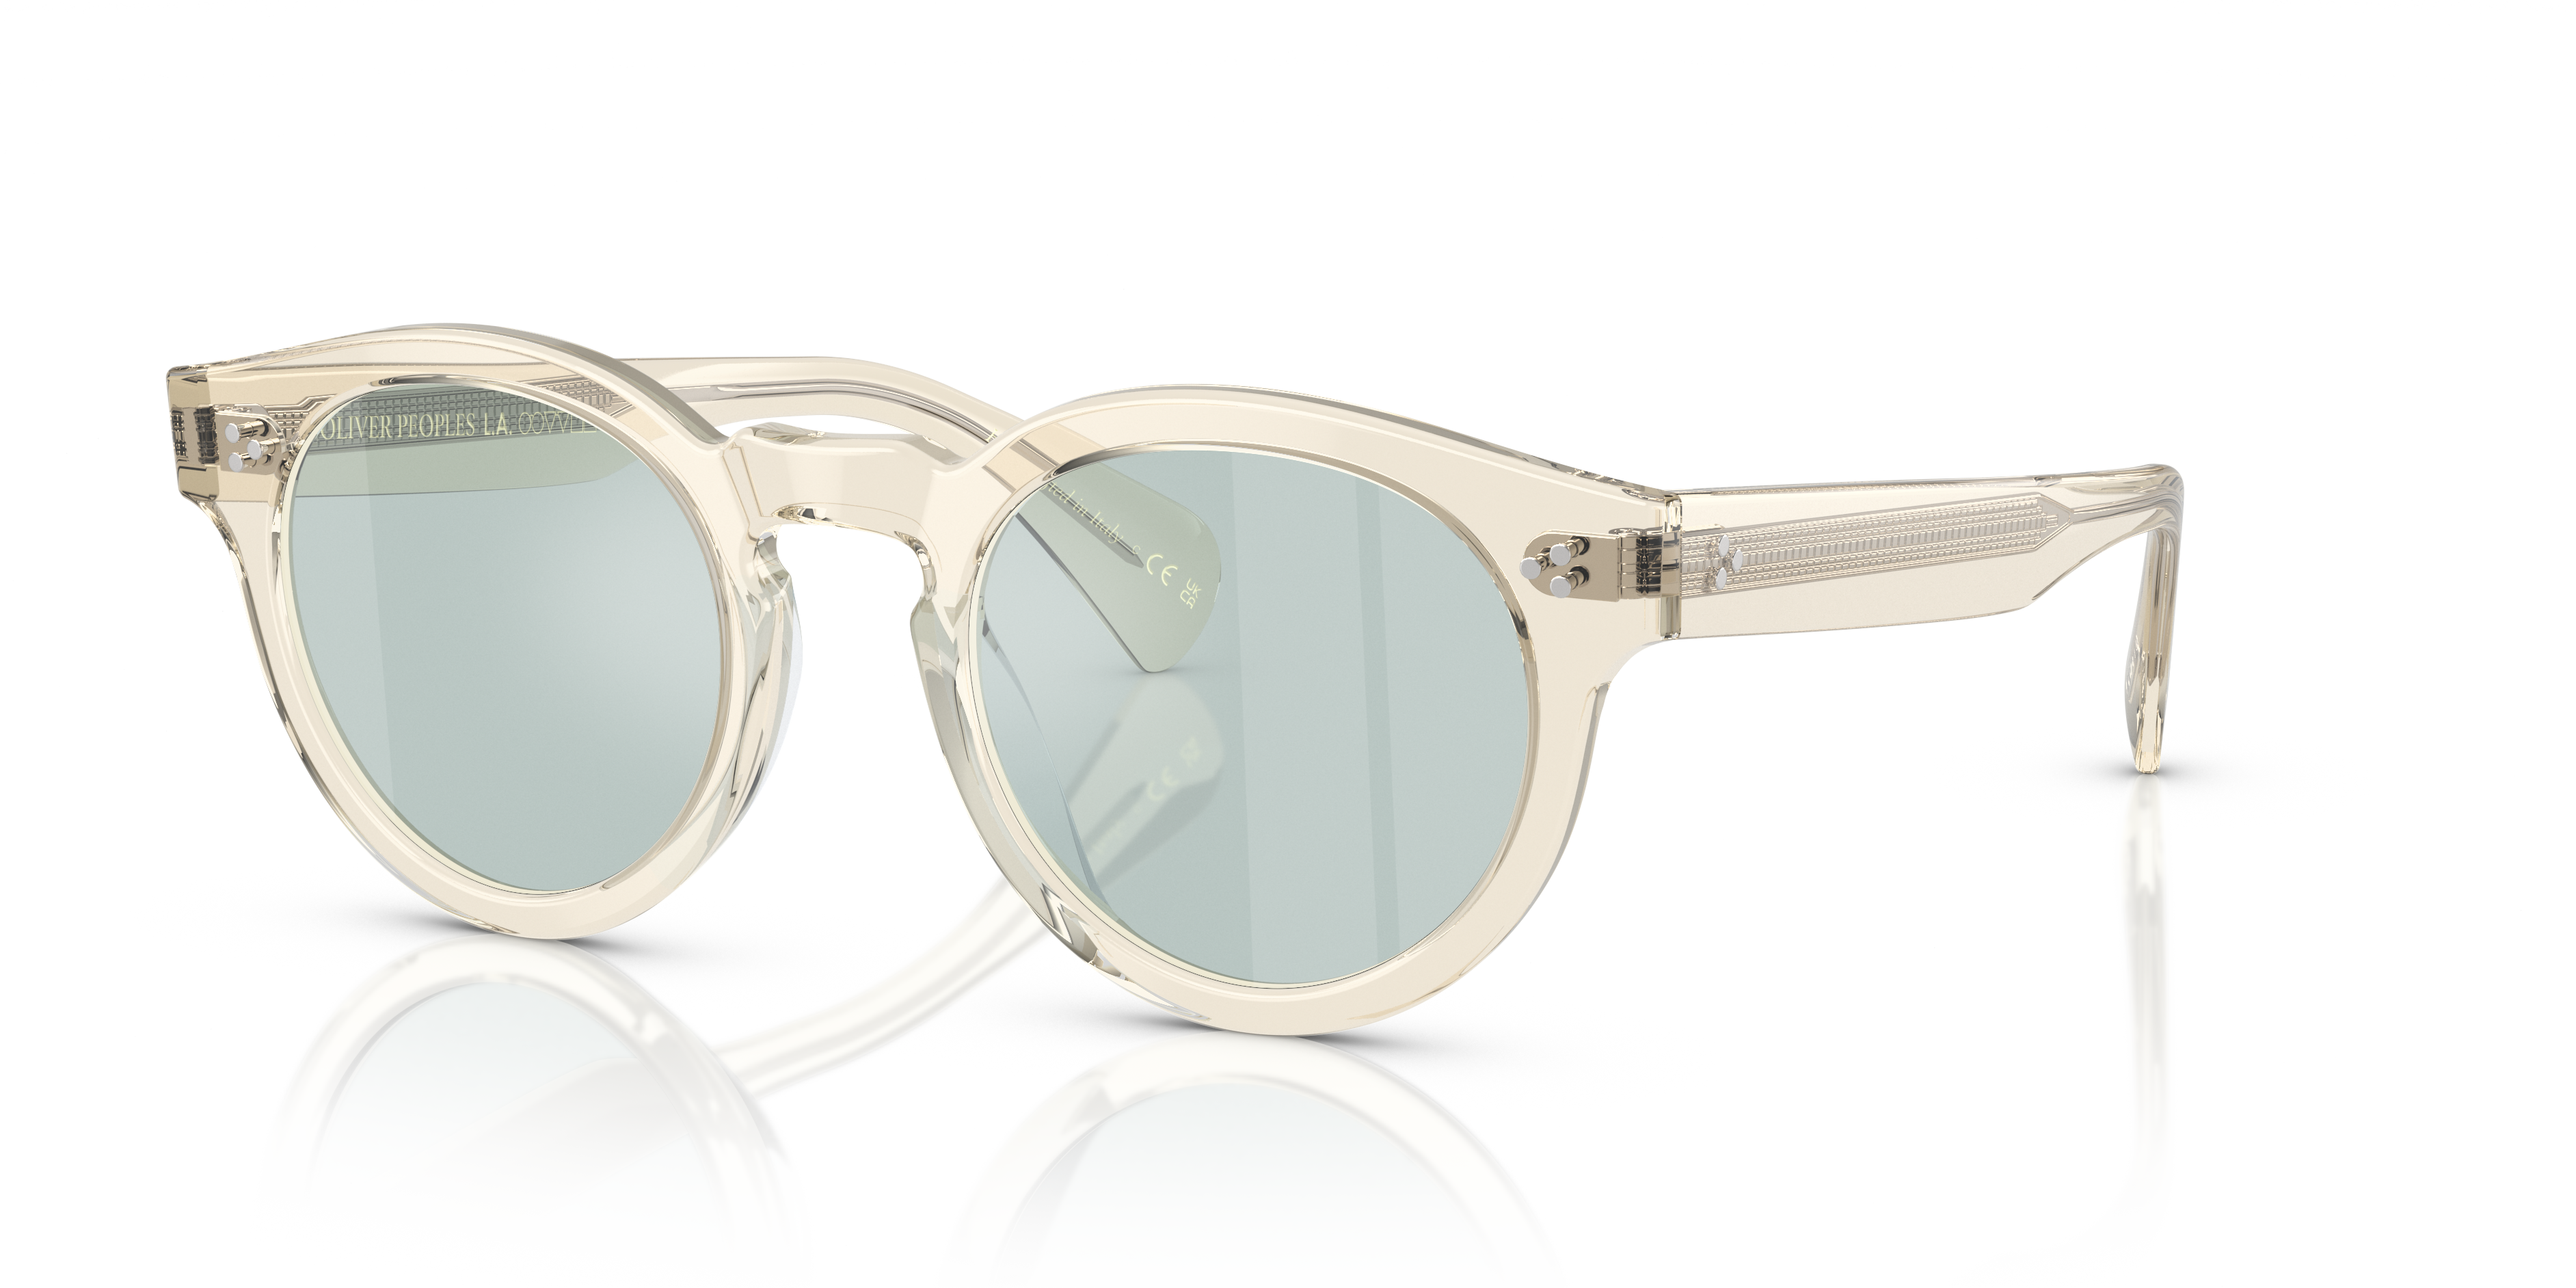 Metallic - Save 5% Oliver Peoples Eyeglasses in Gold Womens Sunglasses Oliver Peoples Sunglasses 